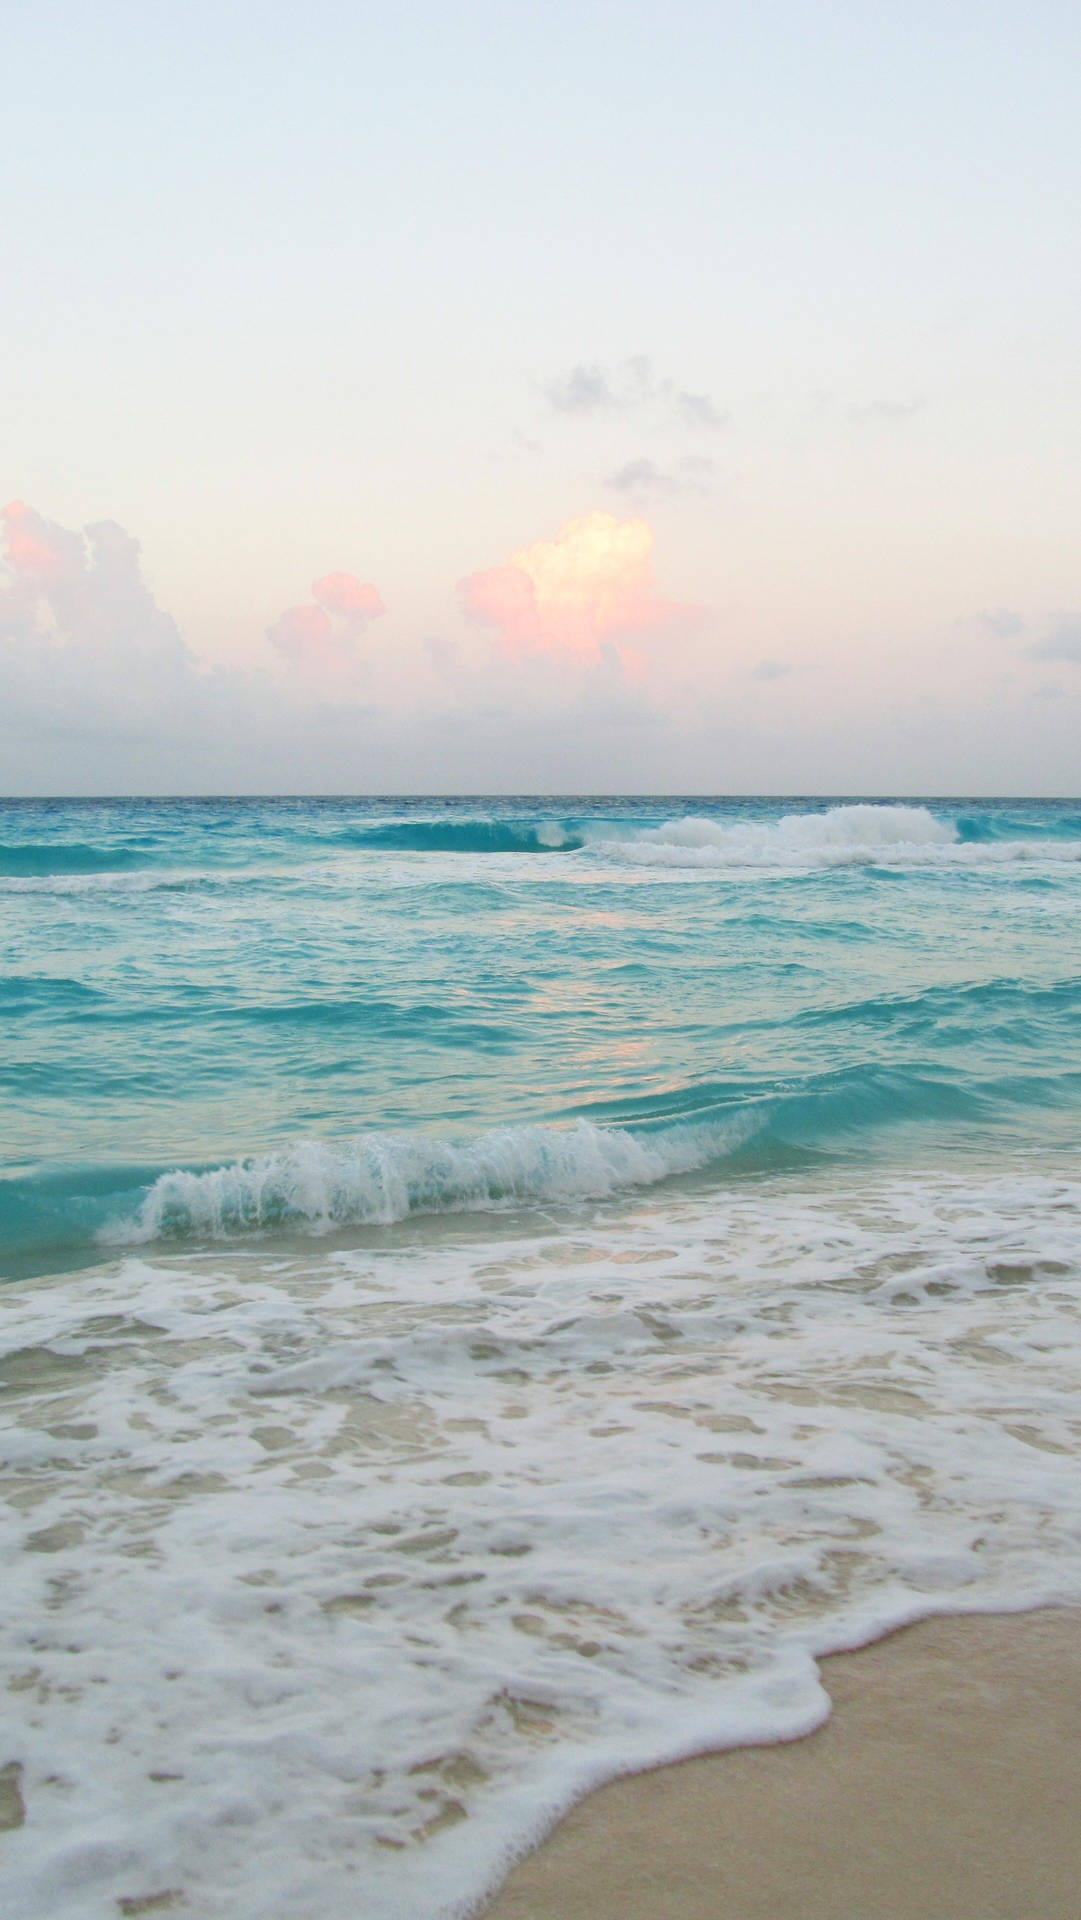 A Stunning Ocean Wave Overlooking A Beautiful Beach.